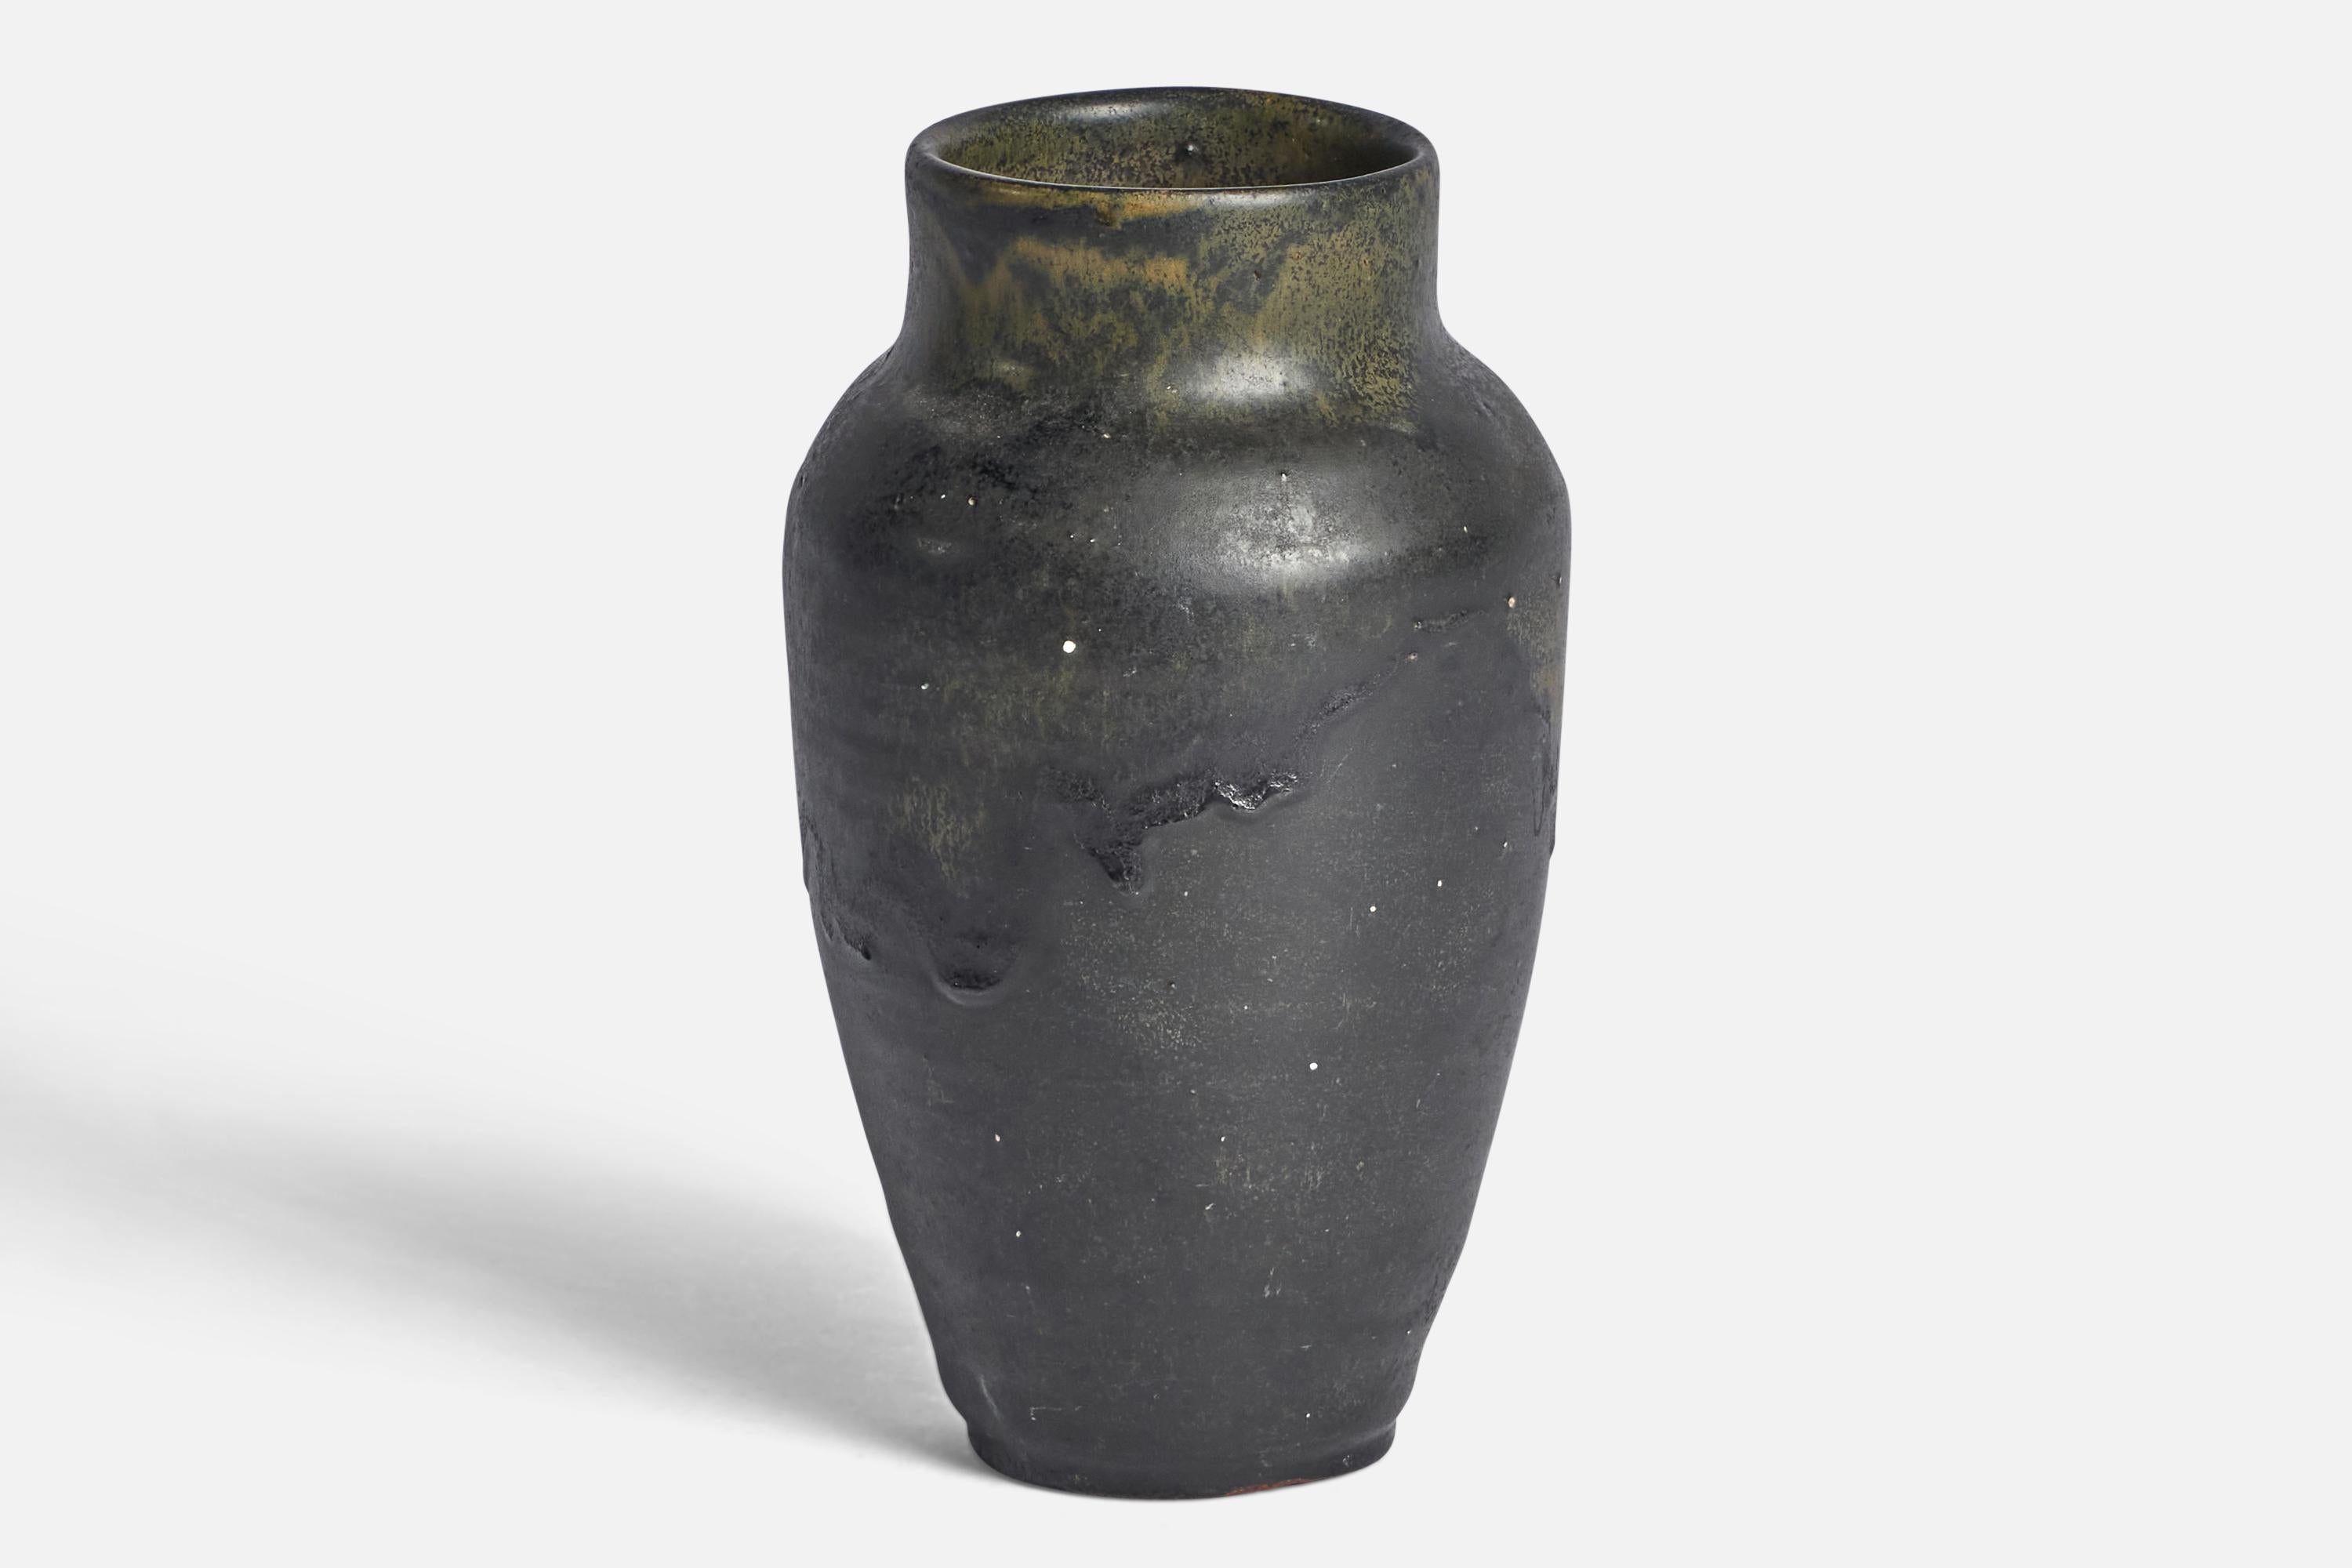 Vase en grès émaillé gris et vert conçu et produit par Agne Aronsson, Suède, vers les années 1970.